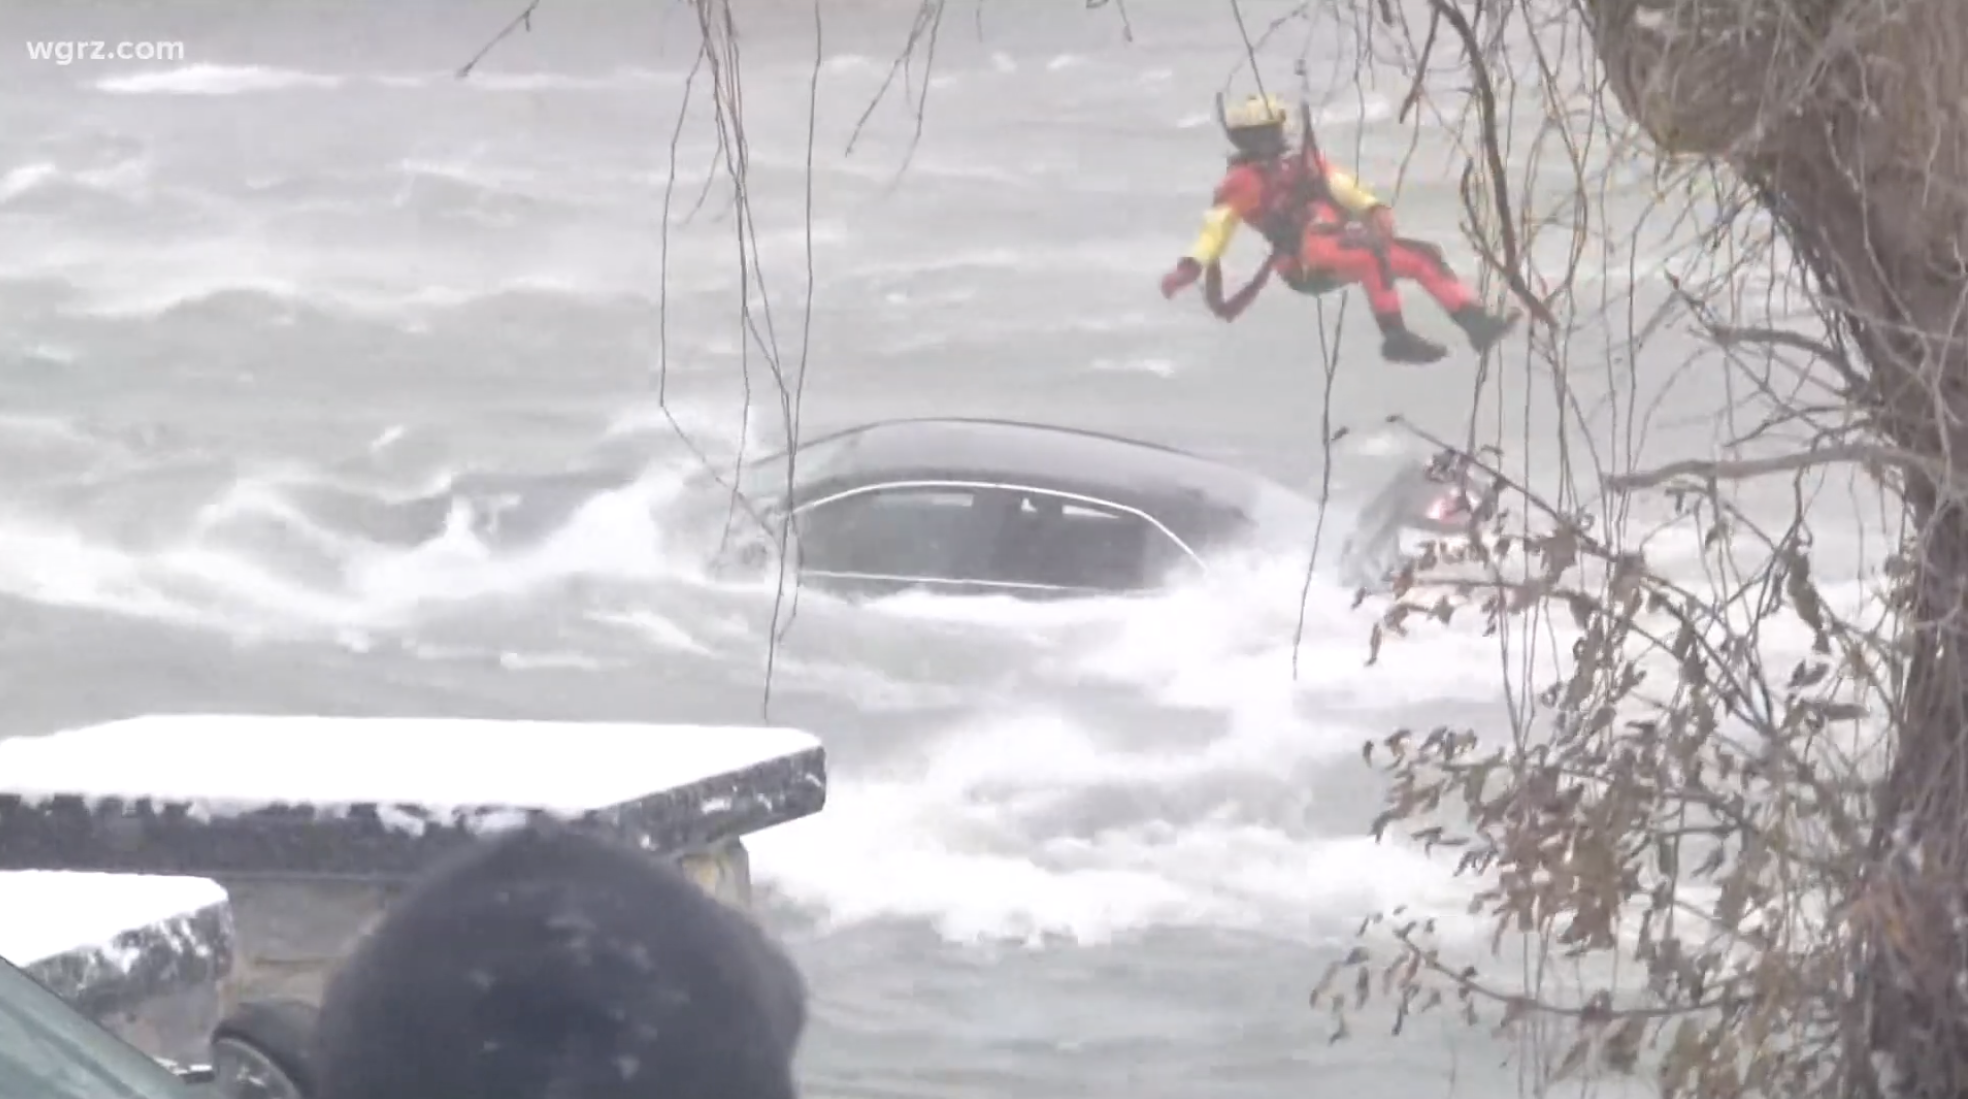 Coast Guard diver attempts Niagara Falls rescue